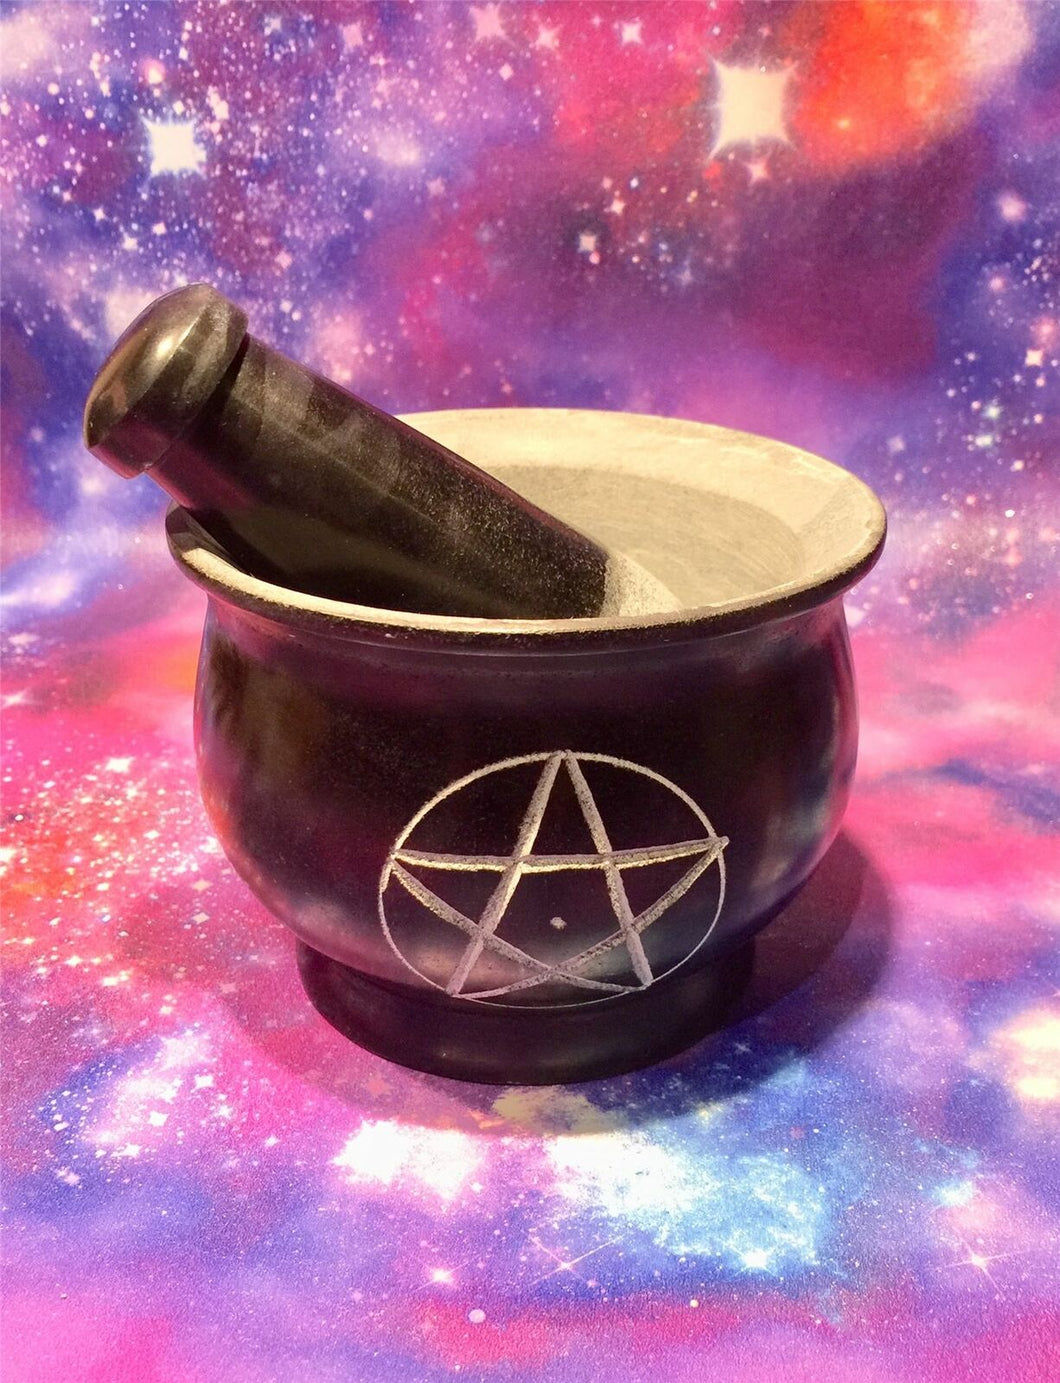 Pentagram Black Soap Stone Mortar and Pestle Wiccan Pagan Altar Pentacle Symbol